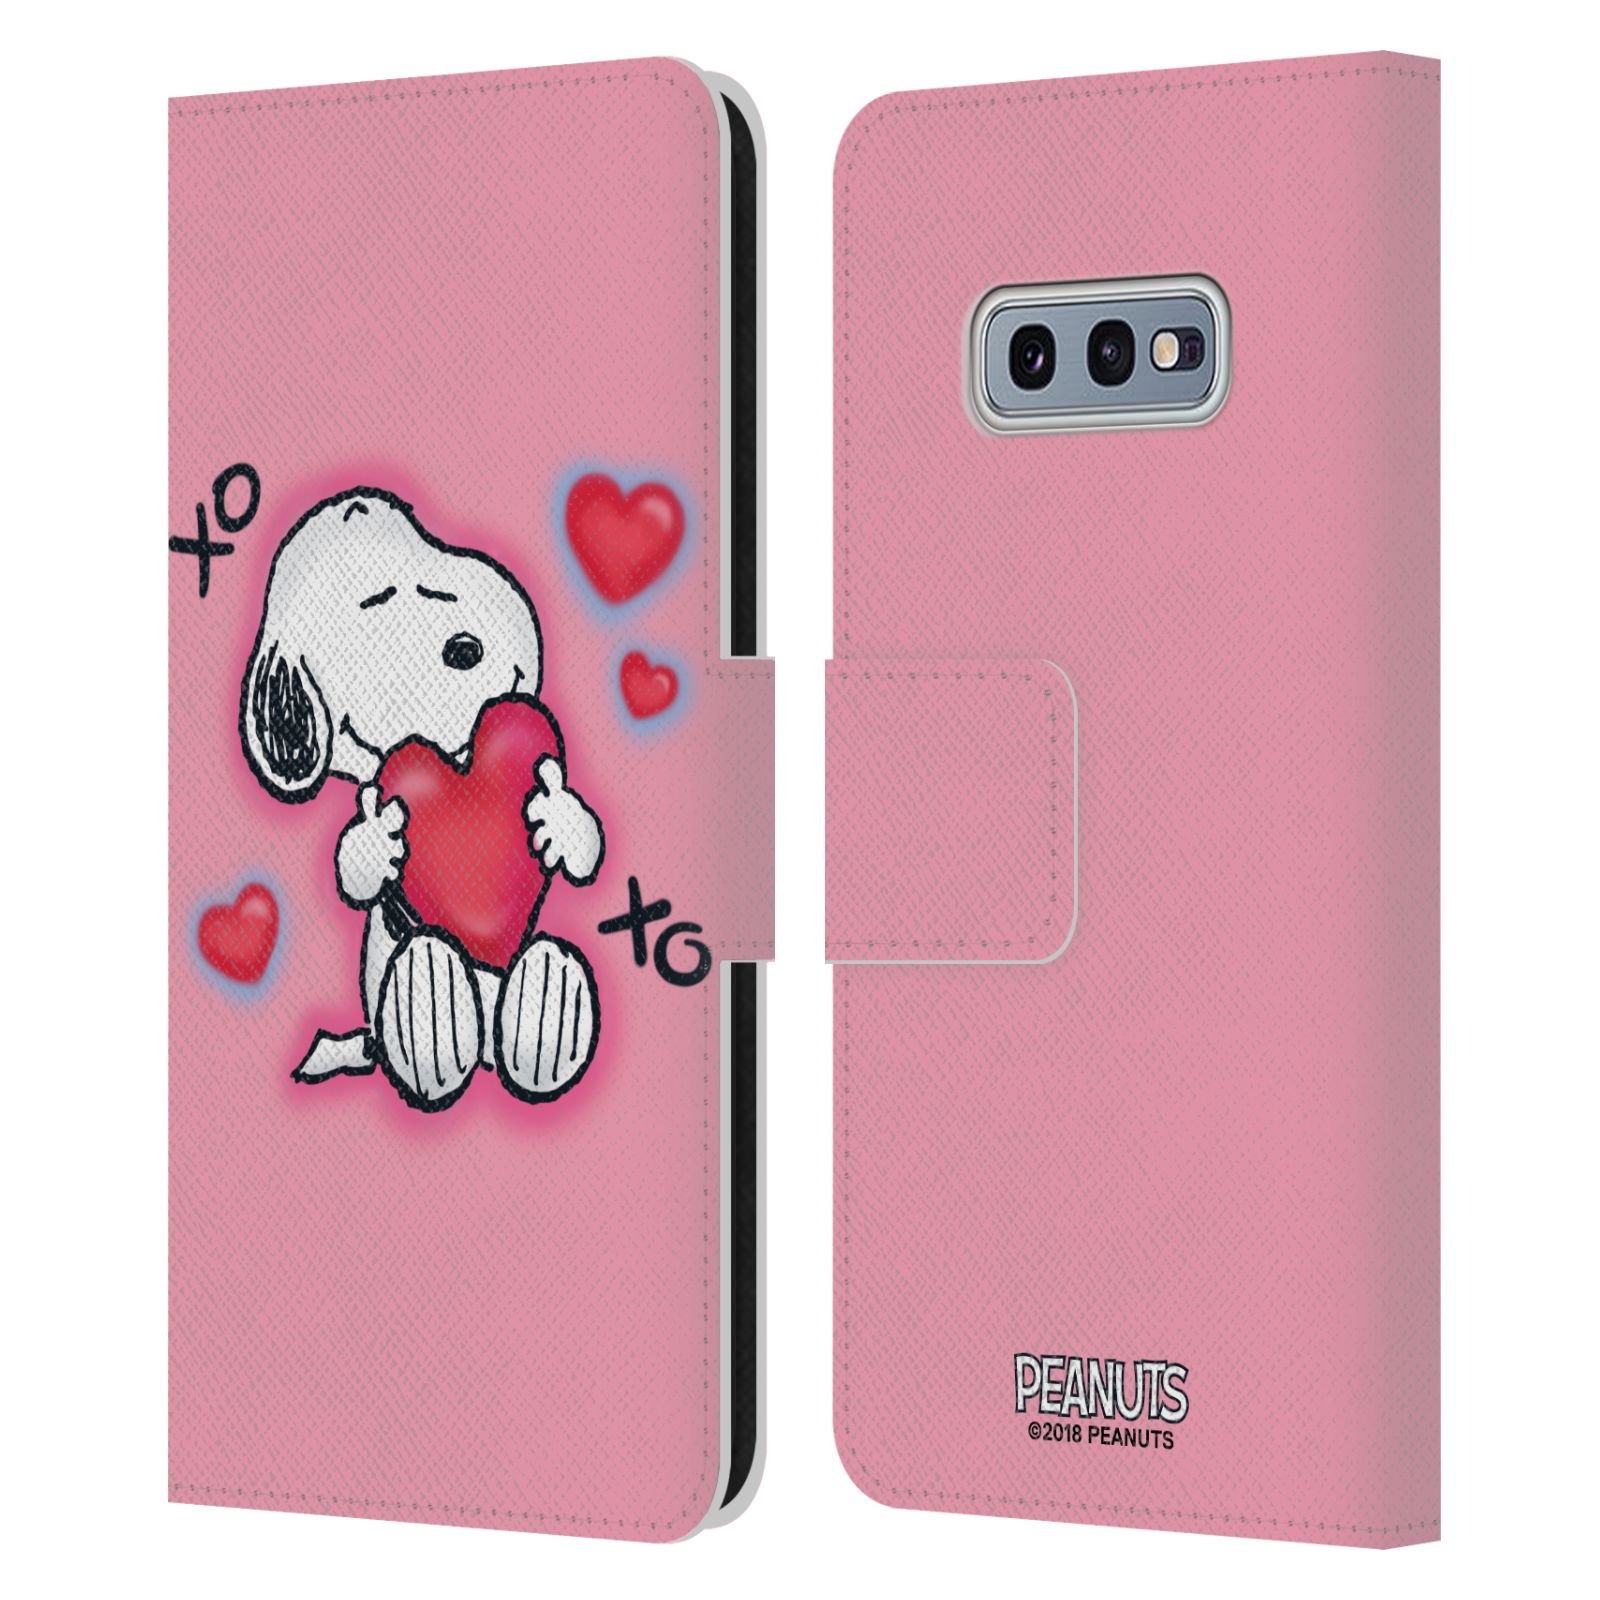 Pouzdro na mobil Samsung Galaxy S10e  - HEAD CASE - Peanuts - Snoopy a srdíčka